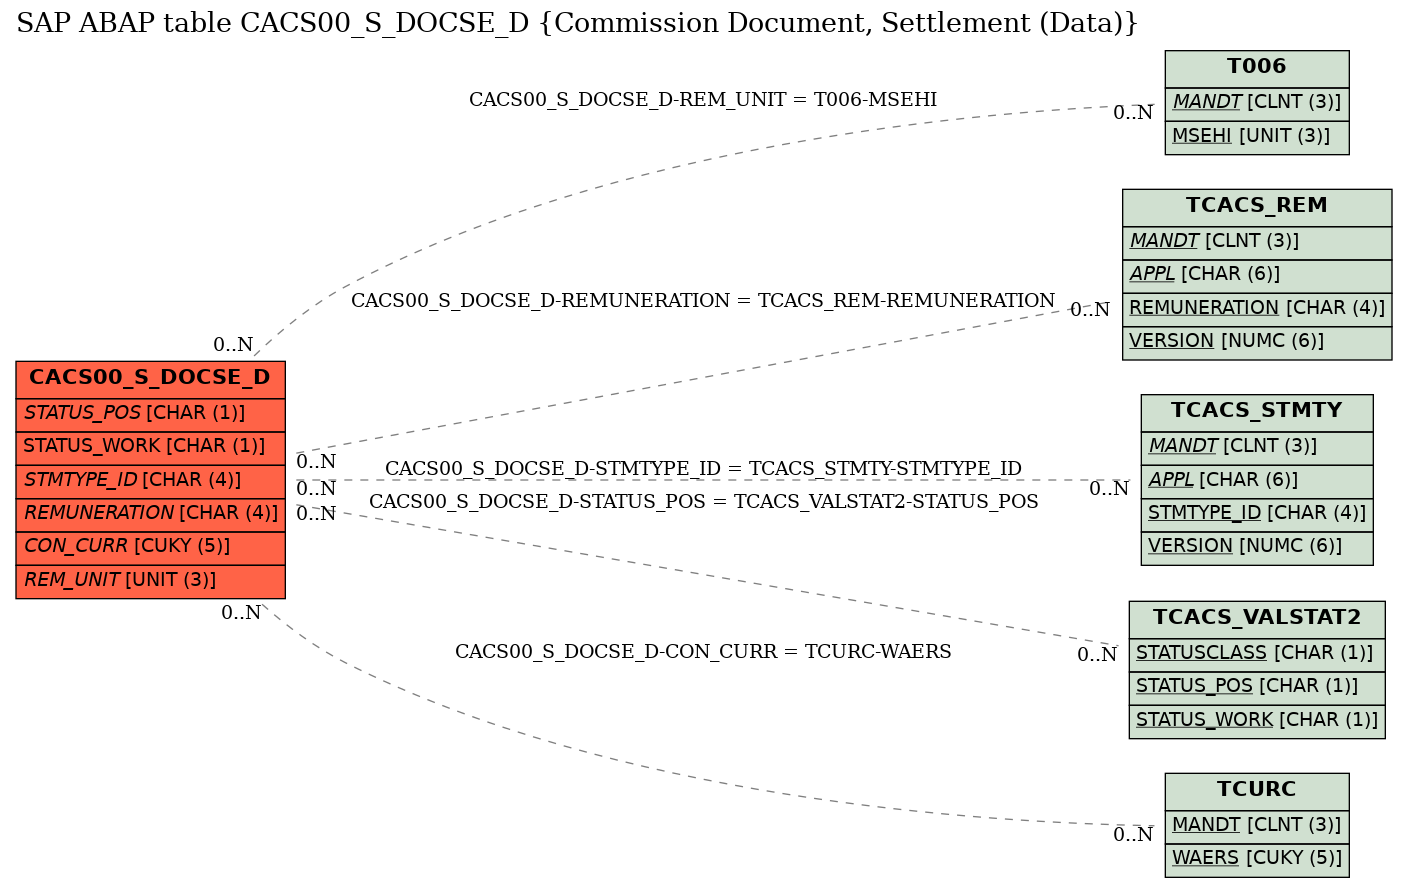 E-R Diagram for table CACS00_S_DOCSE_D (Commission Document, Settlement (Data))